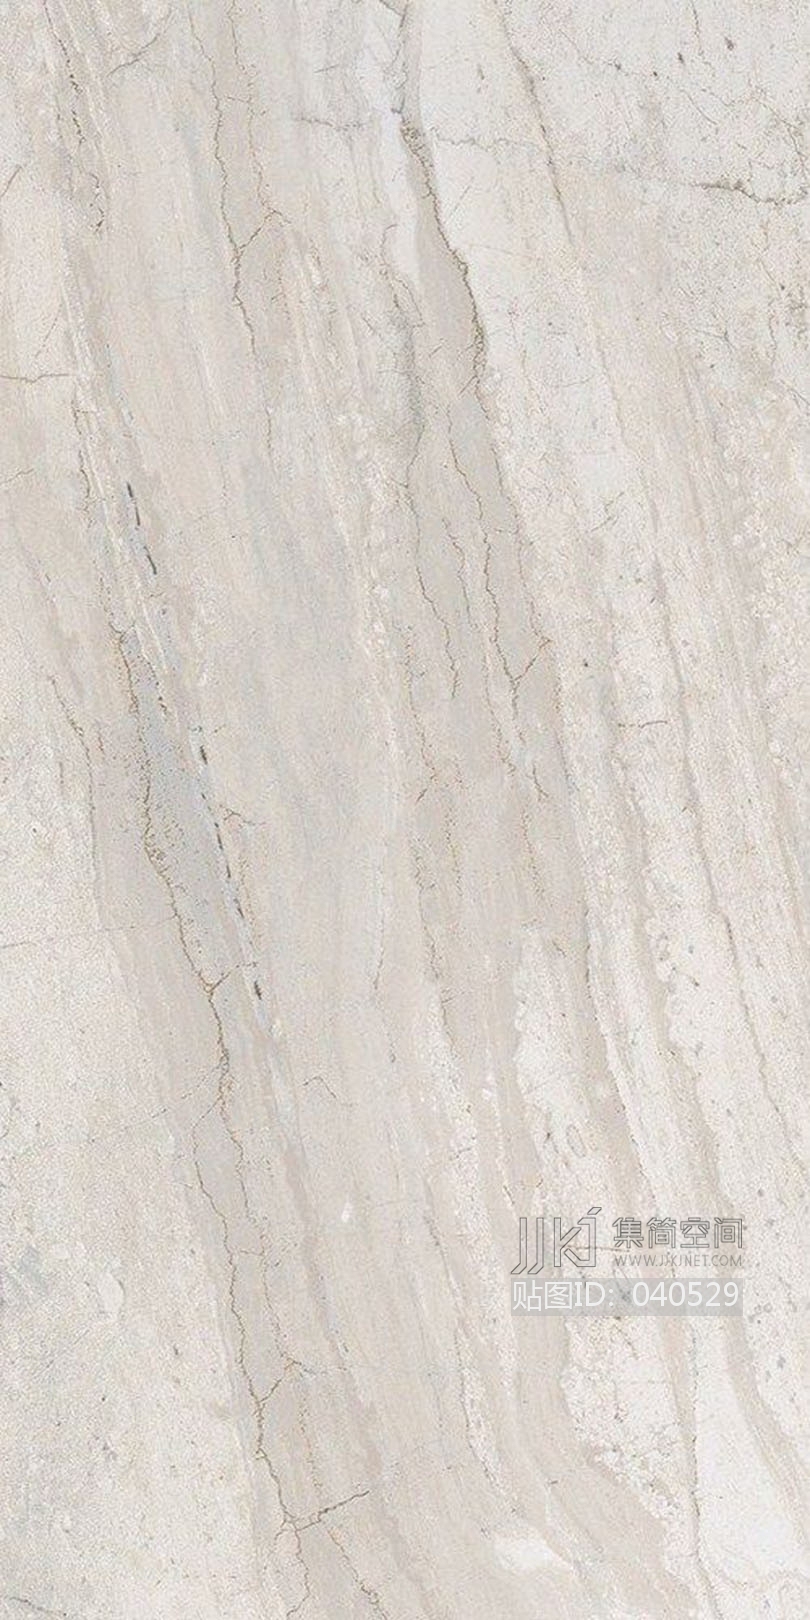 大理石 法国木纹石03材质贴图下载[贴图id:040529]         所在位置